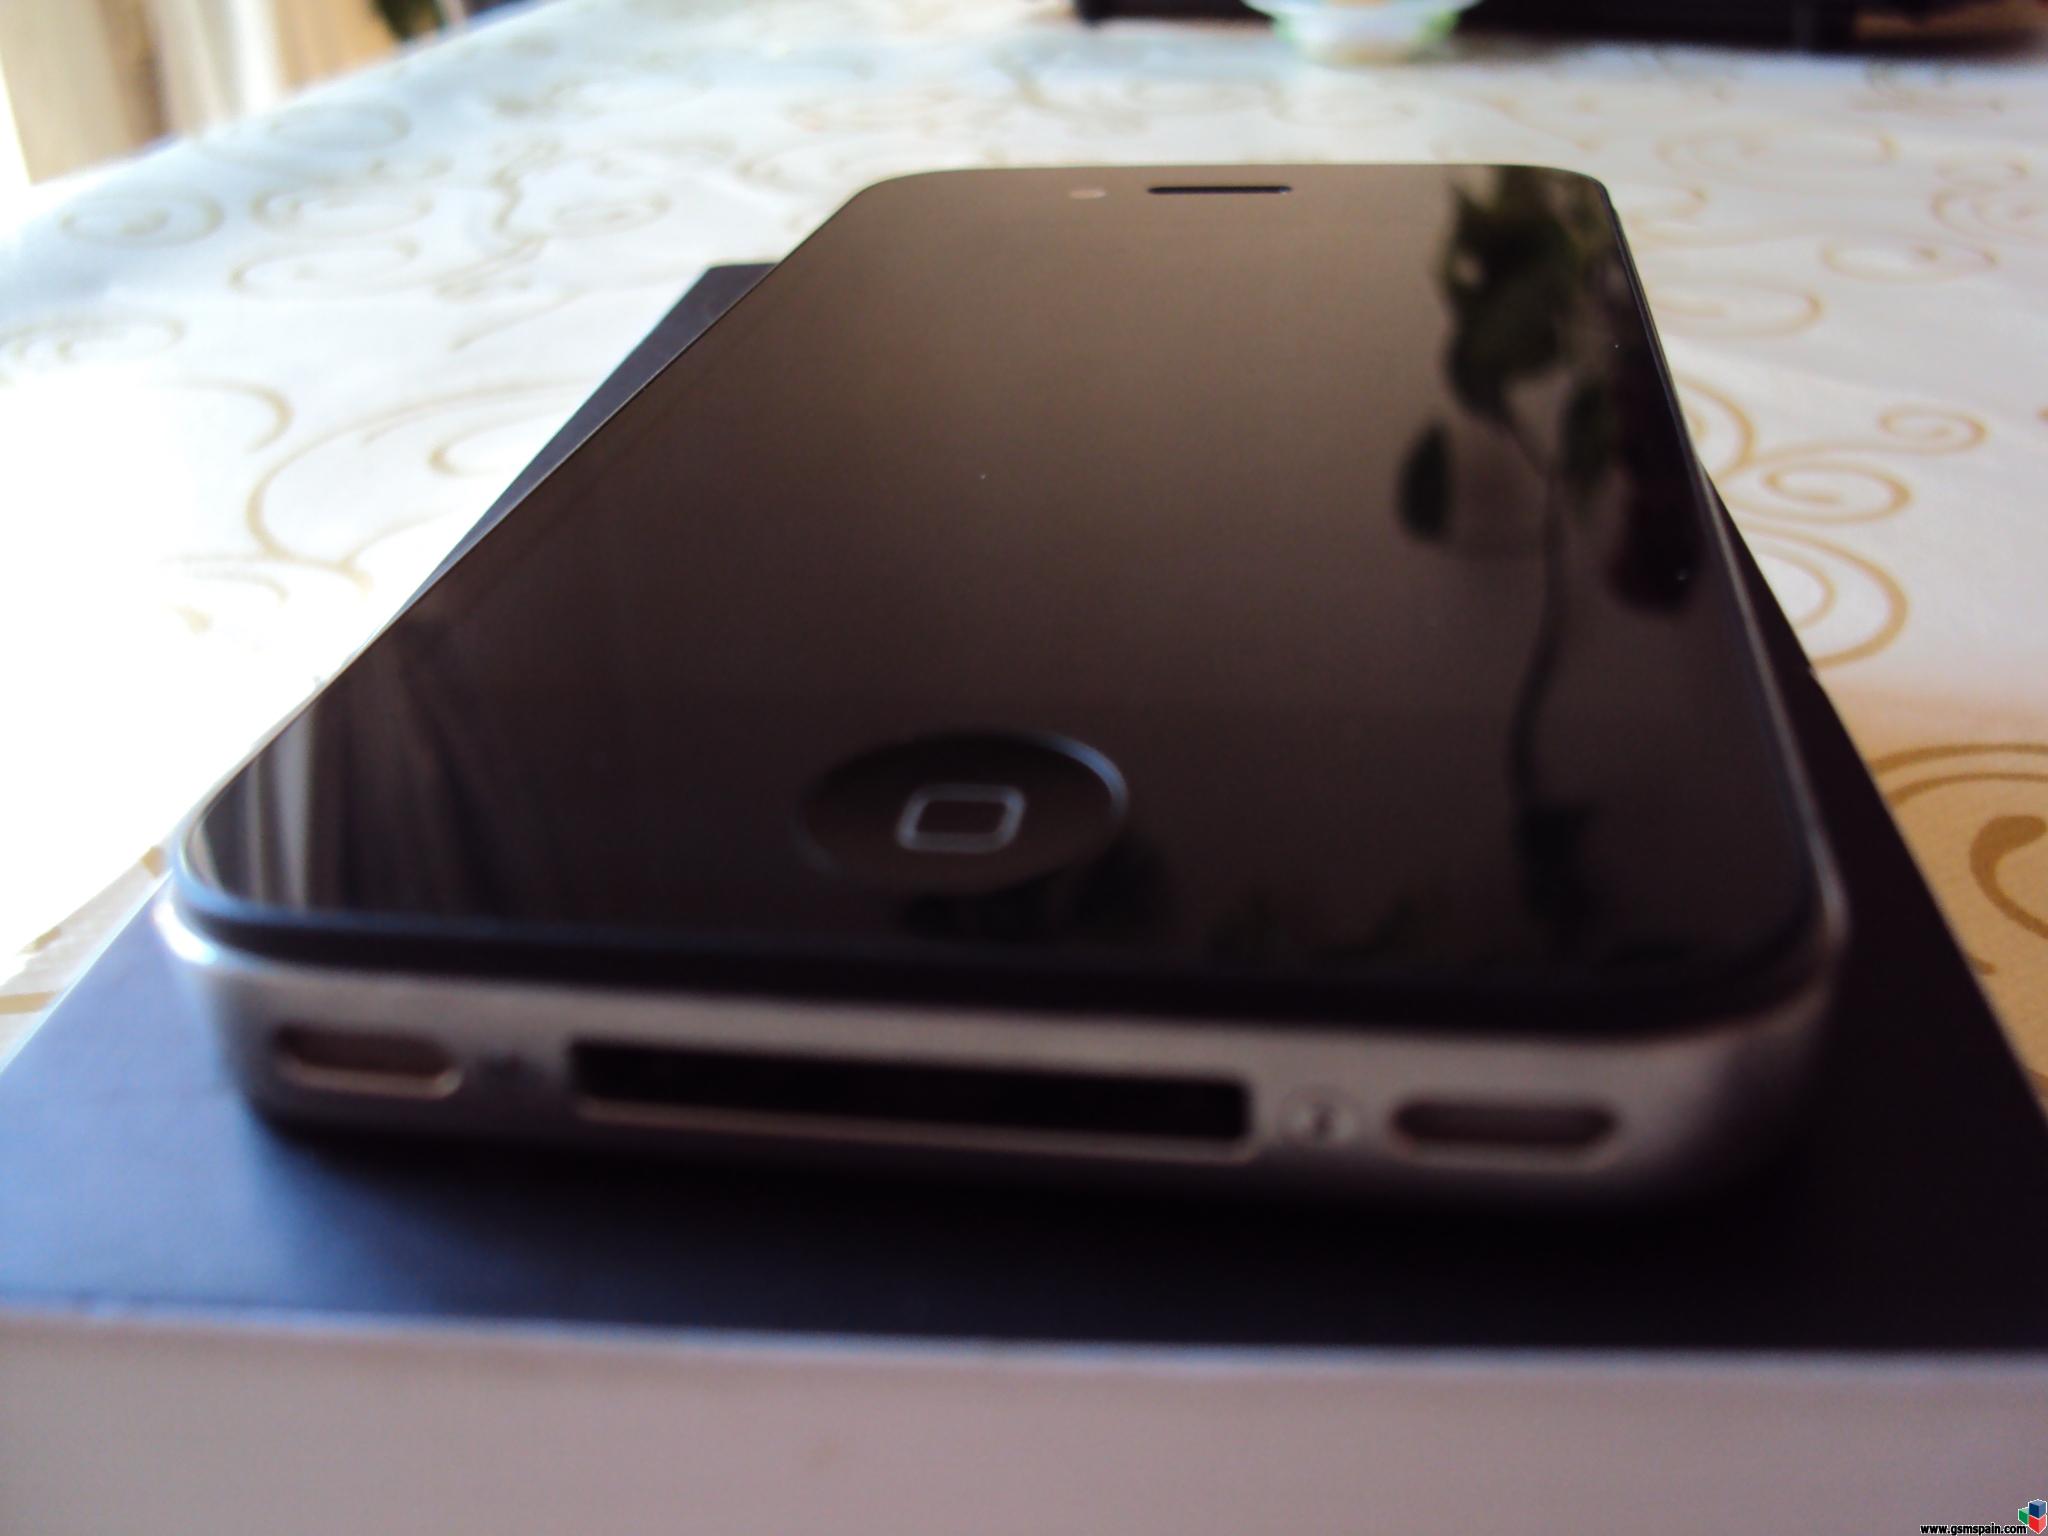 [VENDO] Iphone 4 16gb Negro Vodafone Firm 4.3.2 En Garantia 279,95 g.i